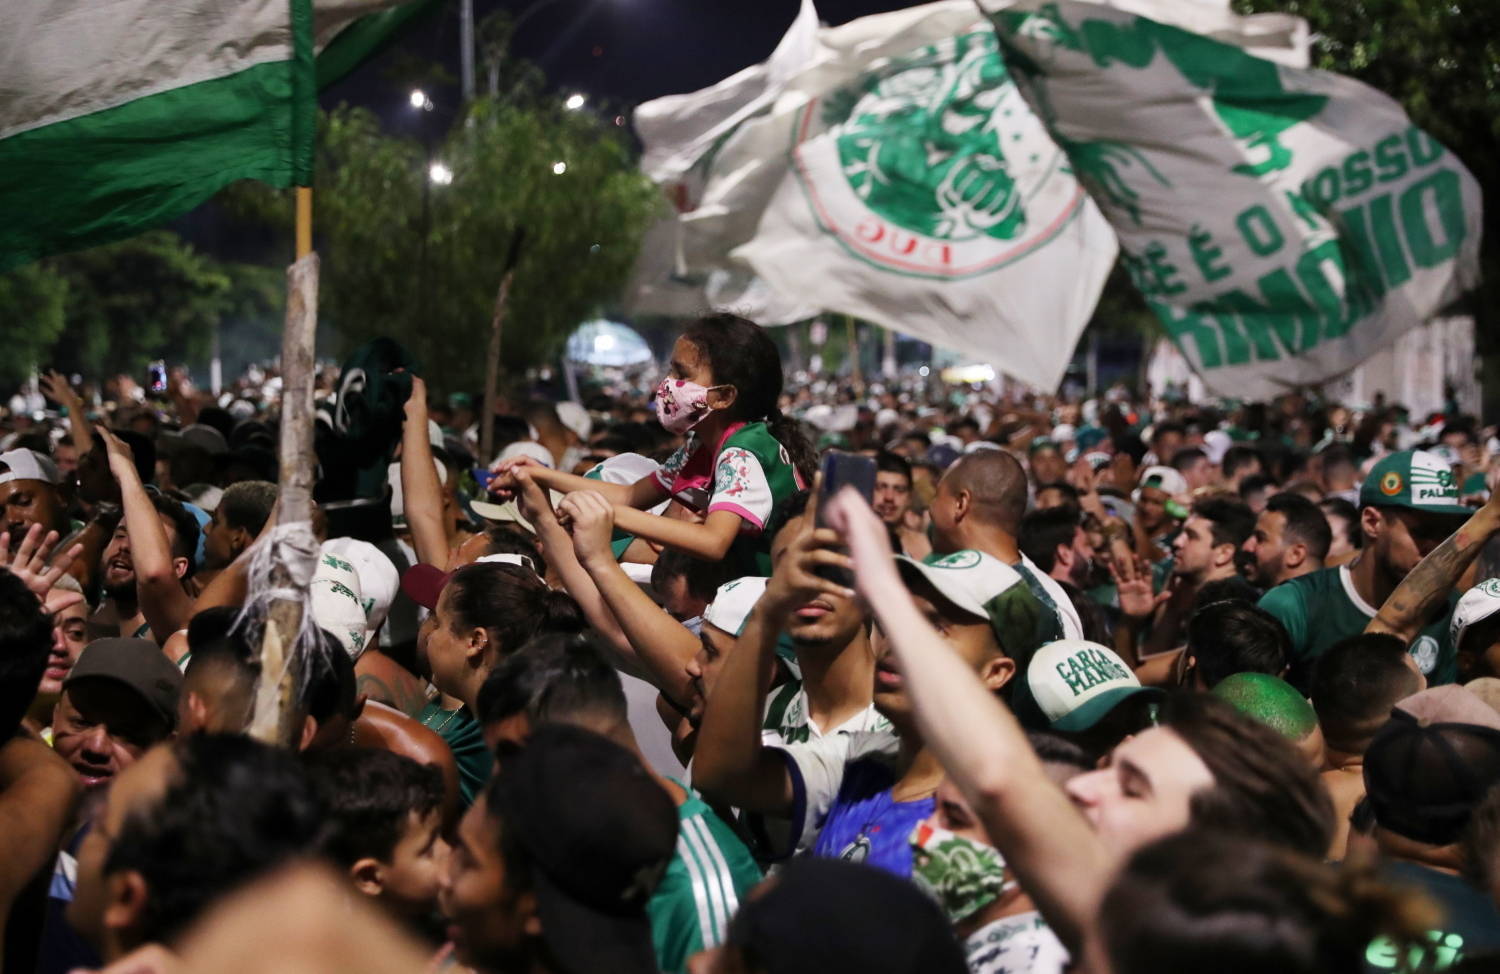 Palmeiras recebe integrantes de torcida organizada na véspera de decisão